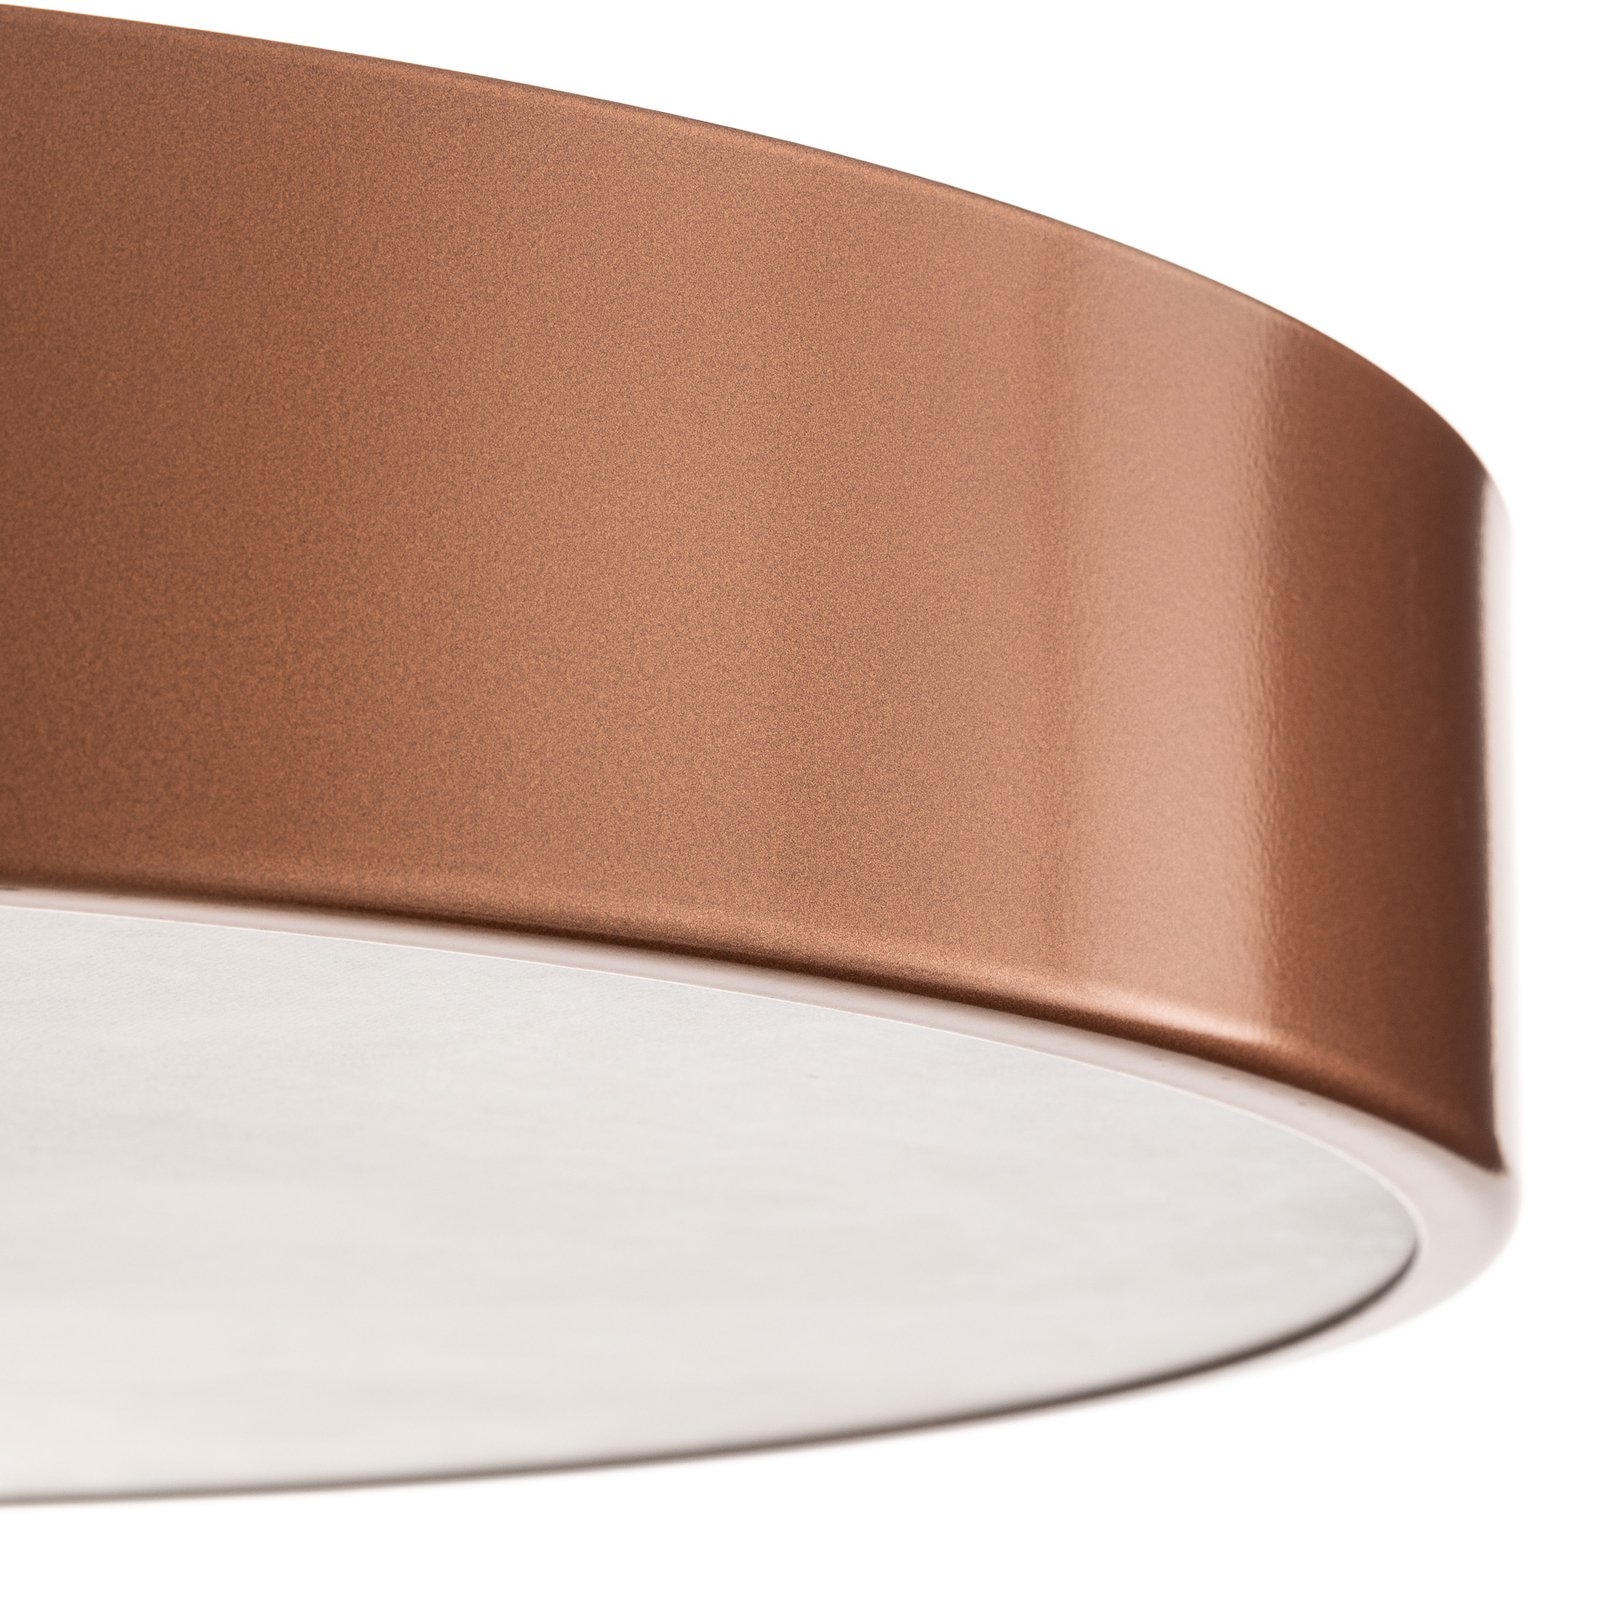 Cleo 500 ceiling light, sensor, Ø 50 cm copper